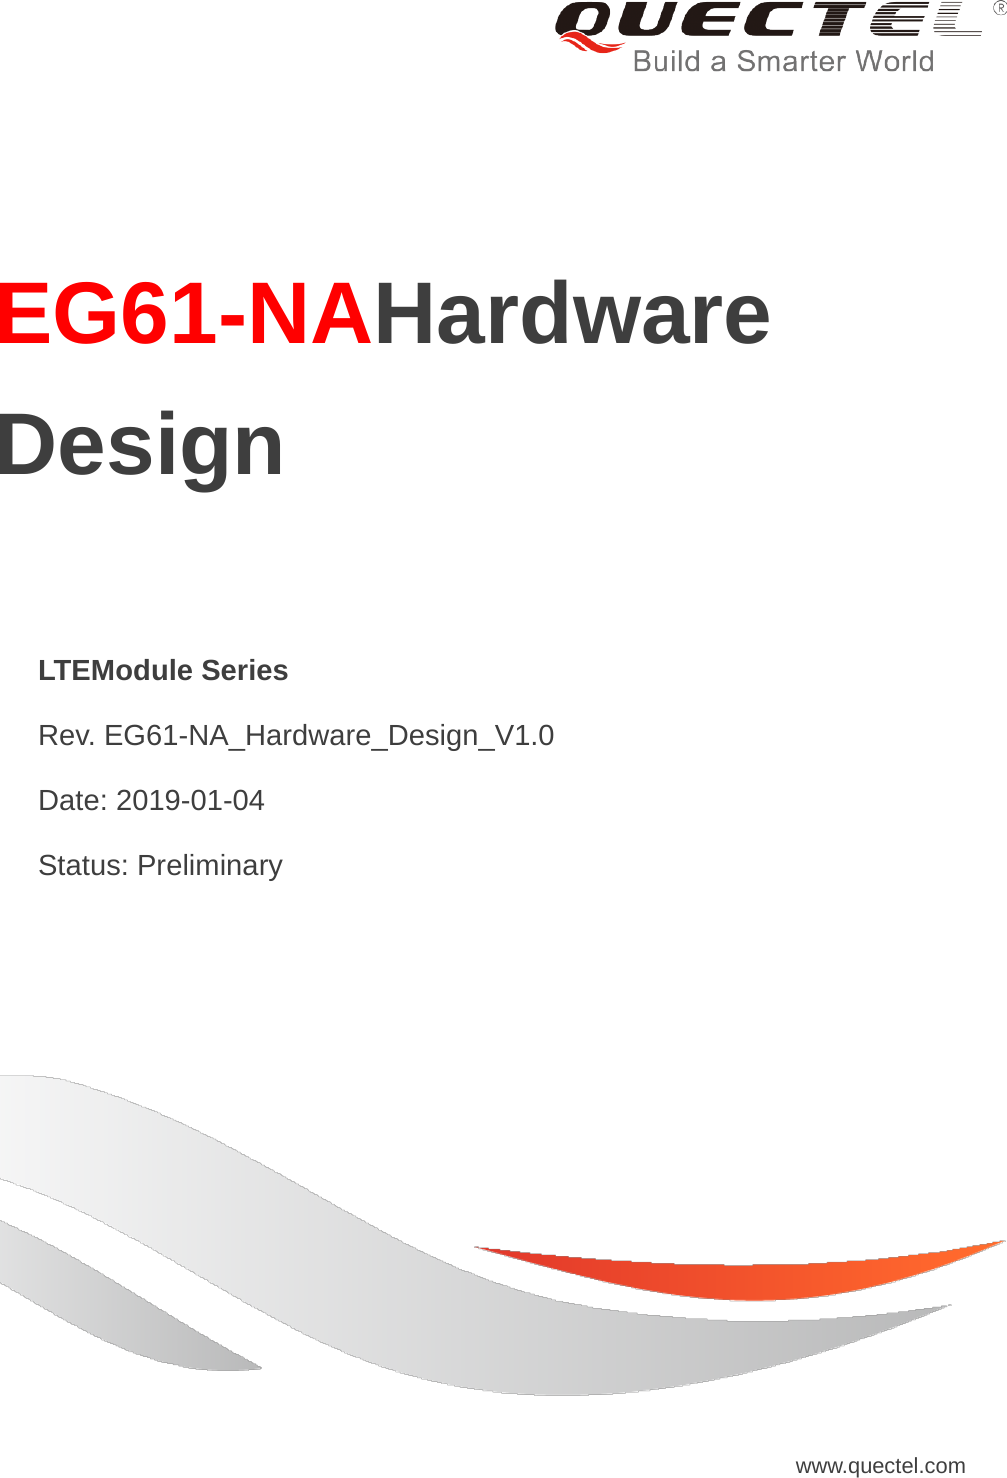     EG61-NAHardware Design  LTEModule Series  Rev. EG61-NA_Hardware_Design_V1.0  Date: 2019-01-04  Status: Preliminary www.quectel.com